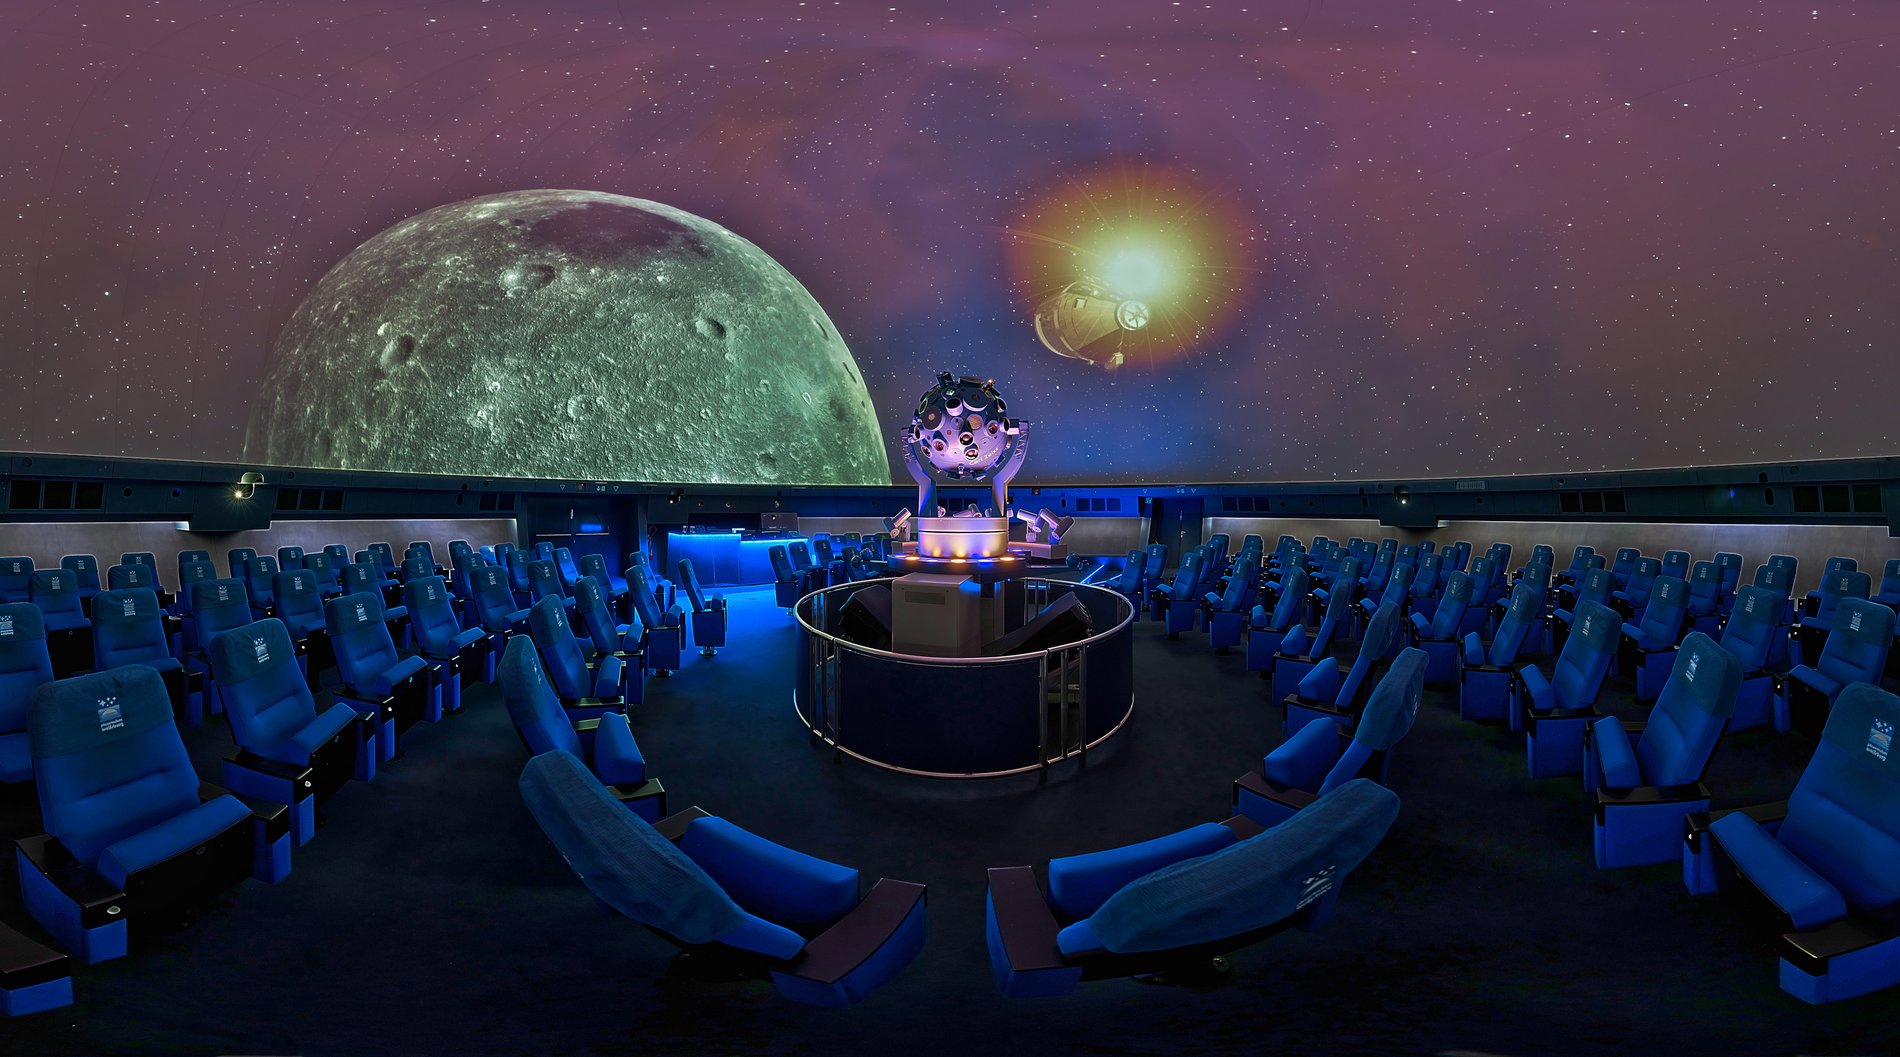 Kuppelsaal im Planetarium